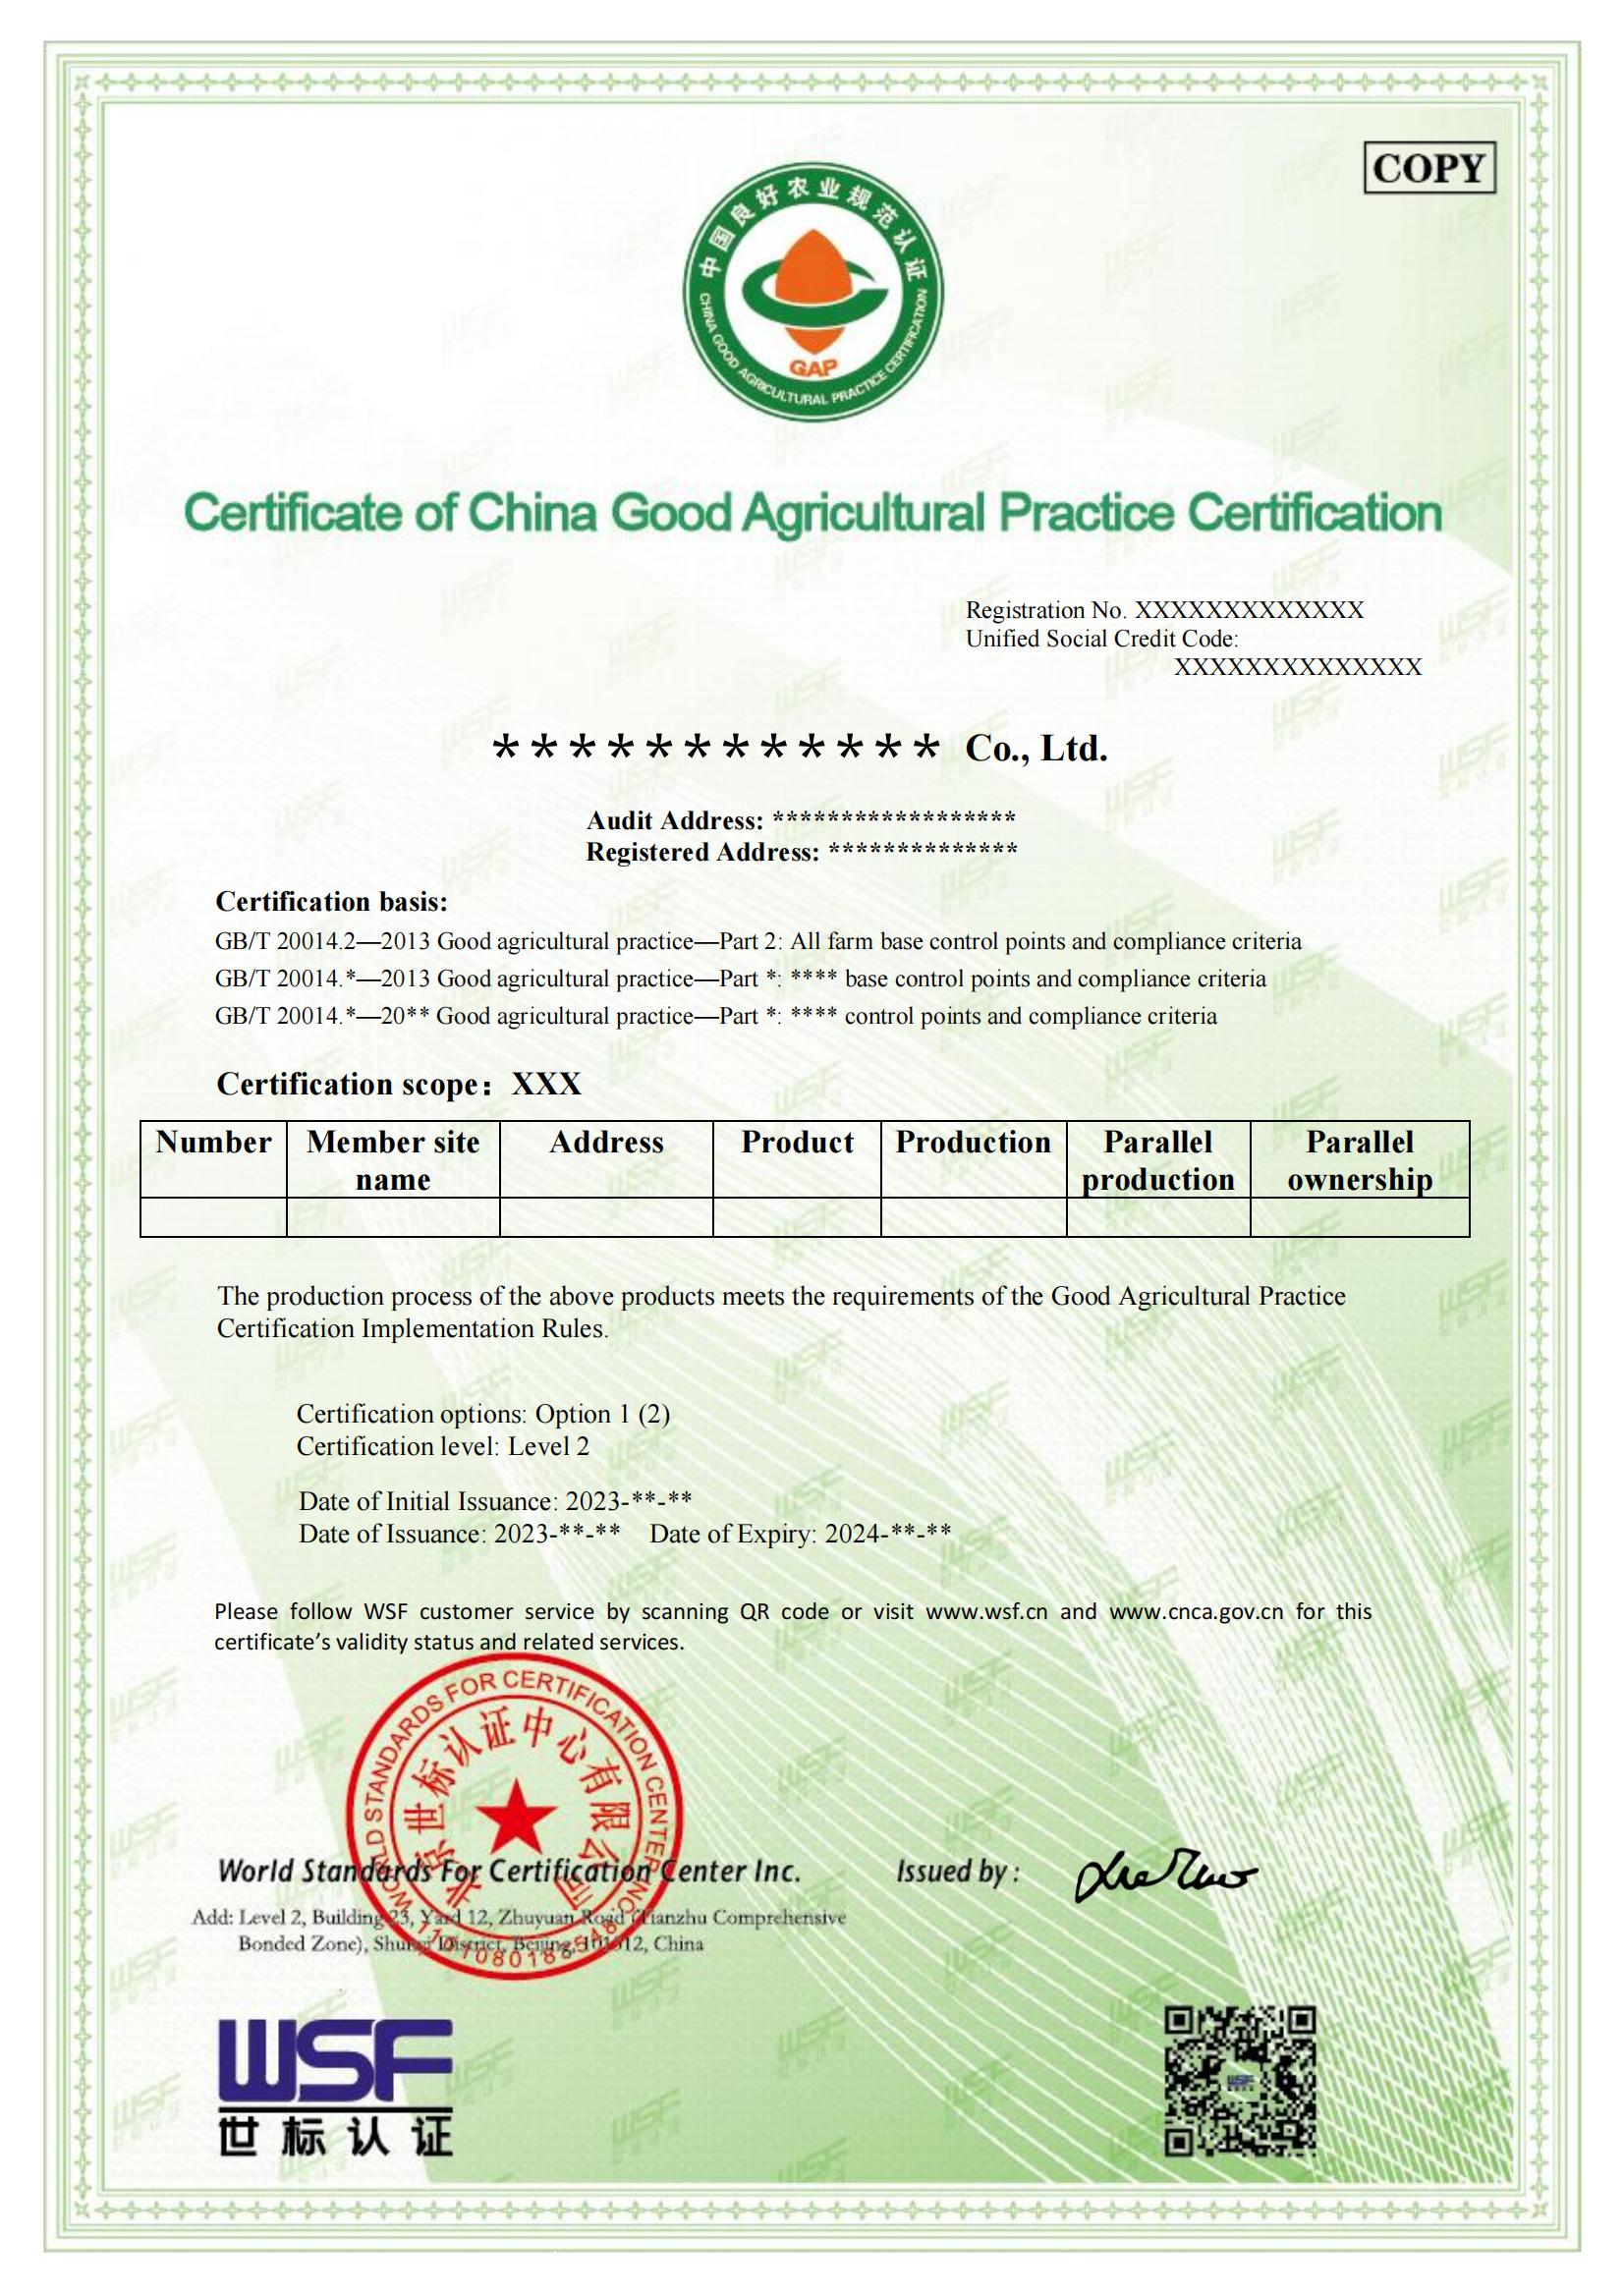 良好农业规范GAP认证证书样本-英文_00.jpg